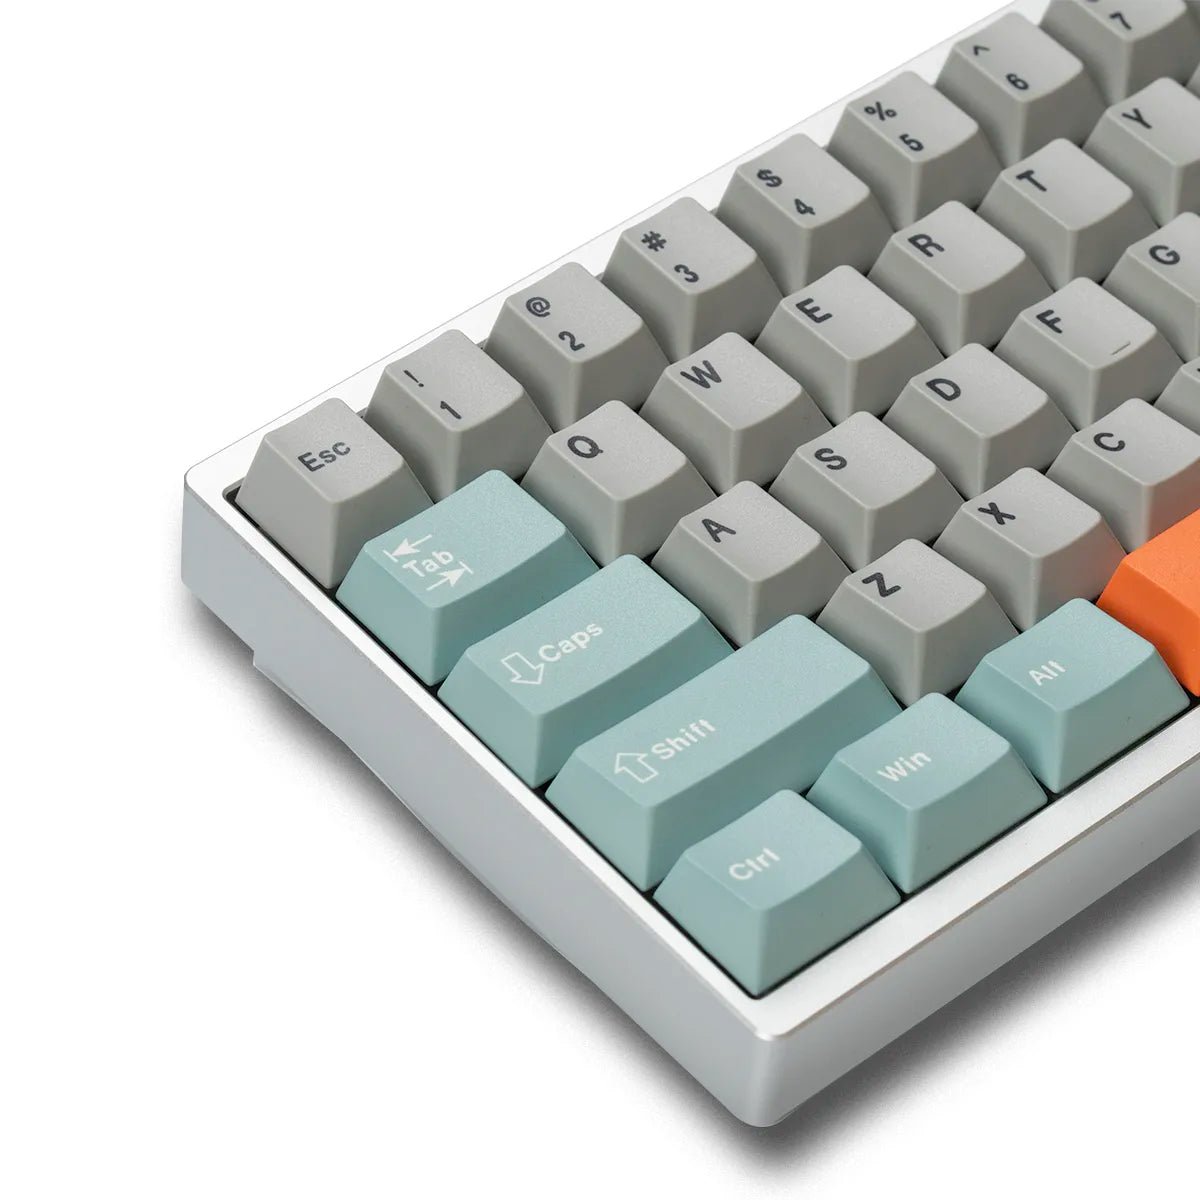 Luminkey65 65% Keyboard - Divinikey